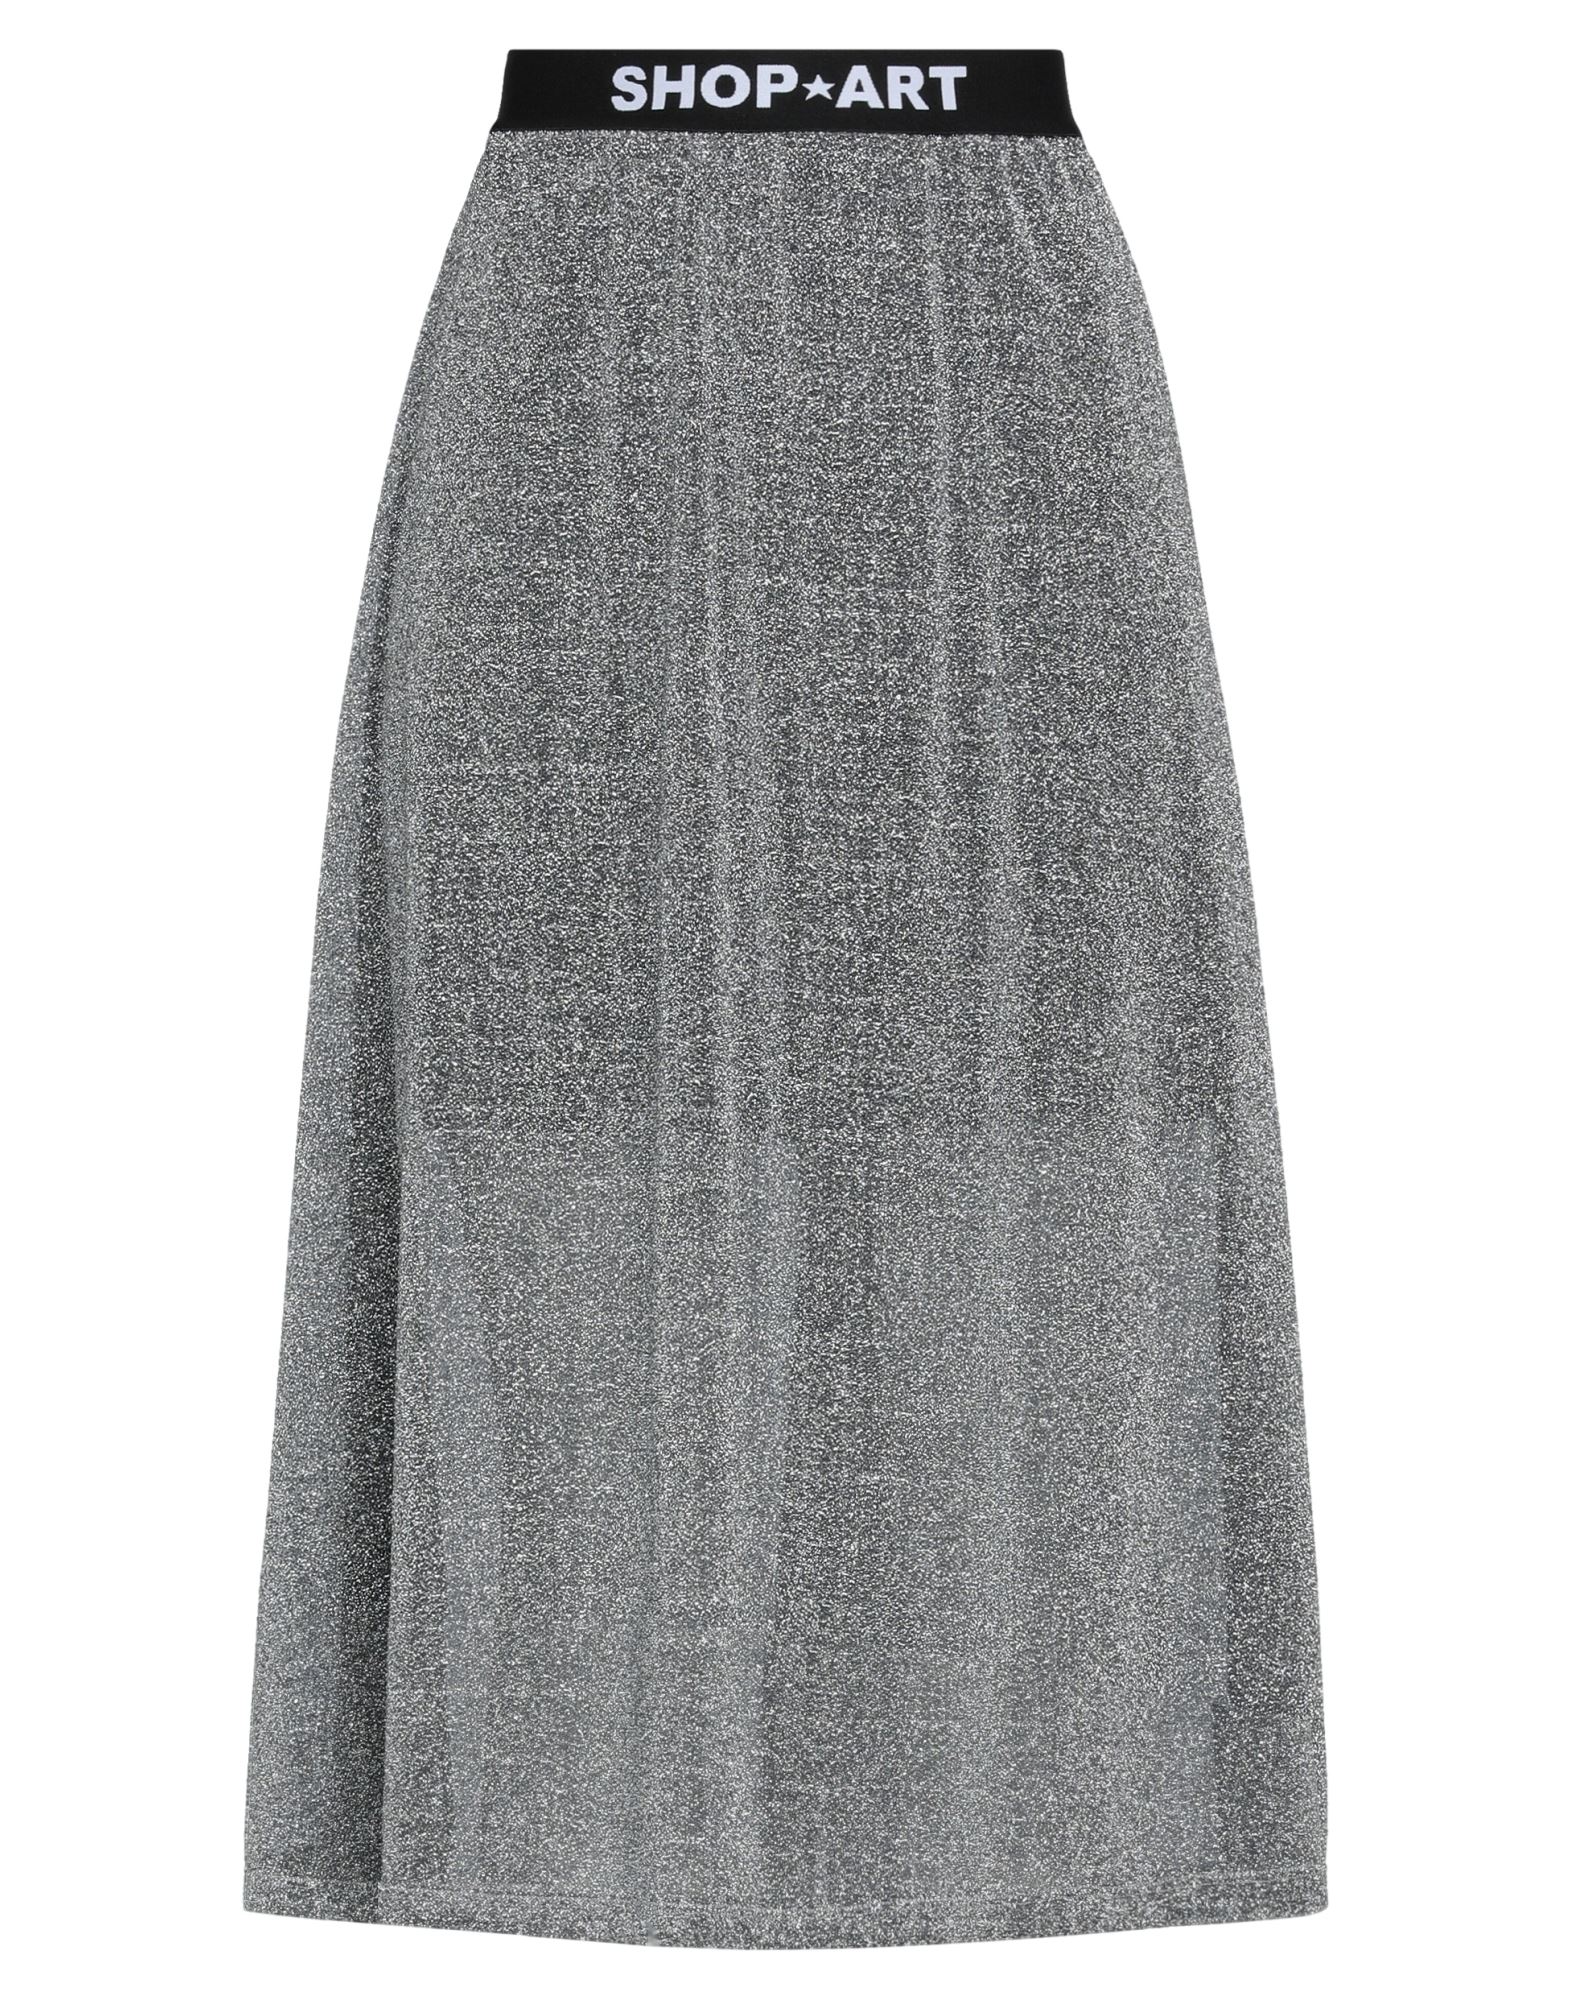 Shop ★ Art Woman Midi Skirt Grey Size L Polyamide, Metallic Fiber